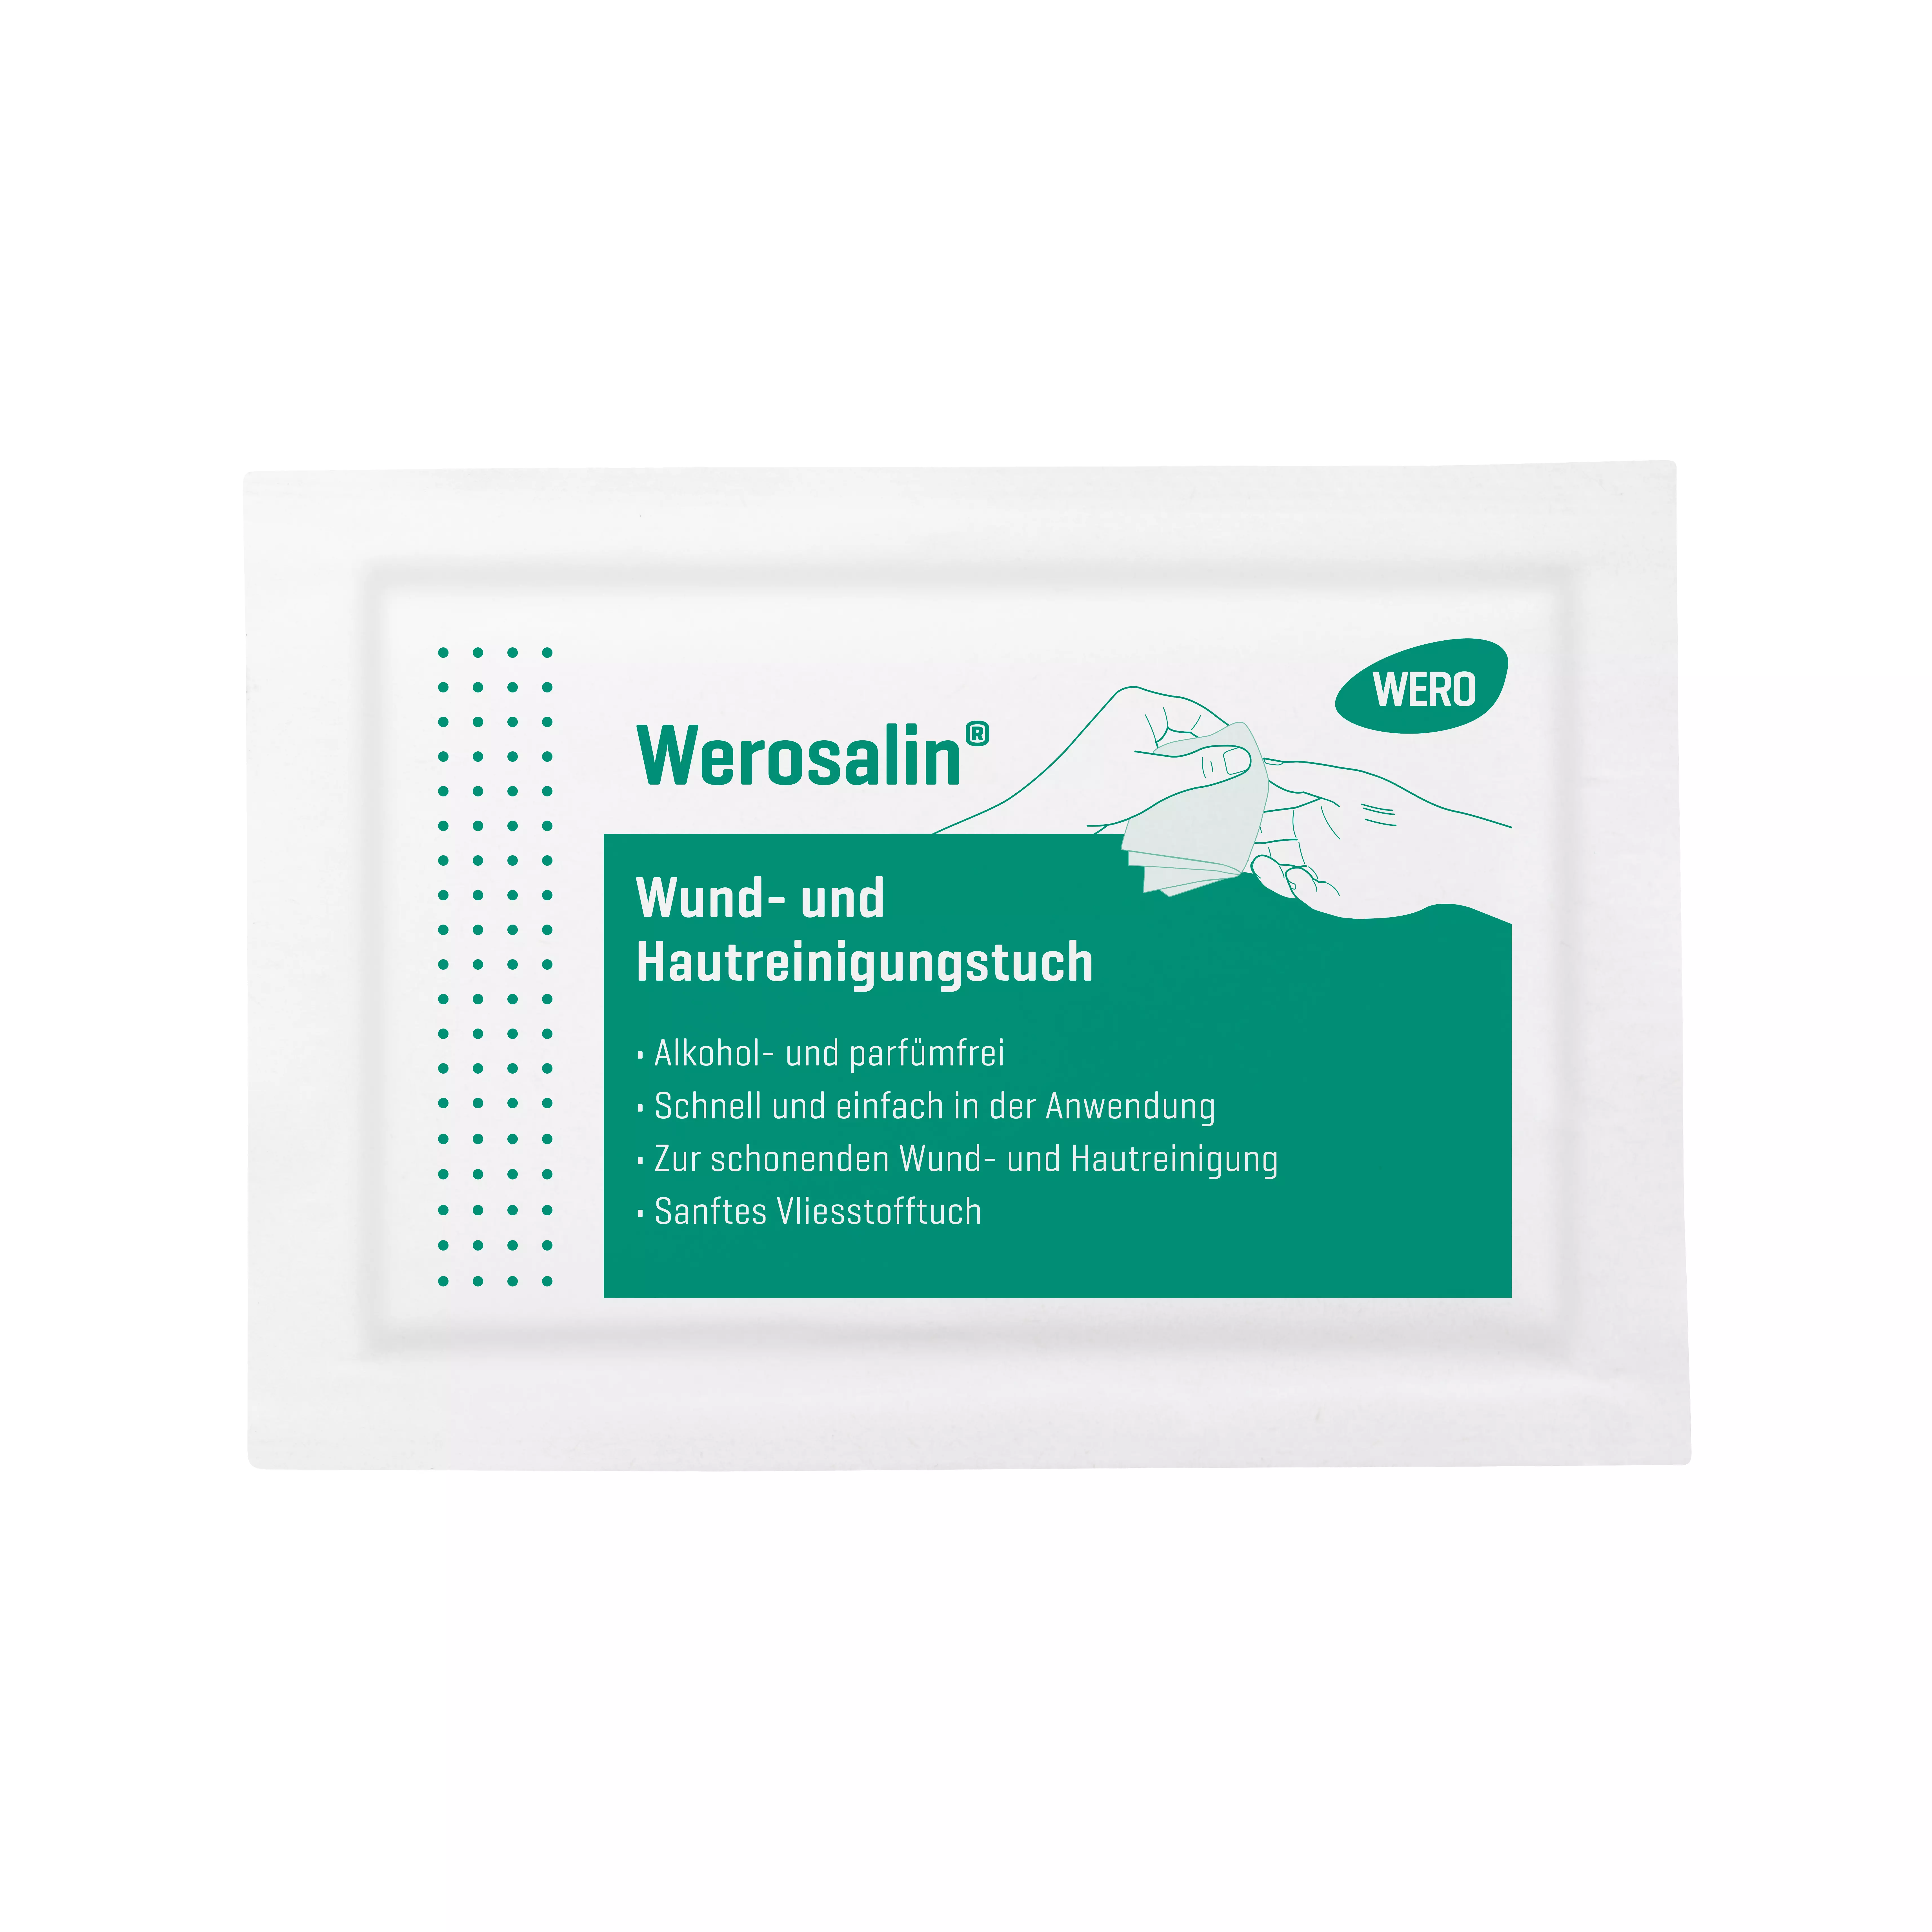 Werosalin® Wund- und Hautreinigungstuch - 1 Stk